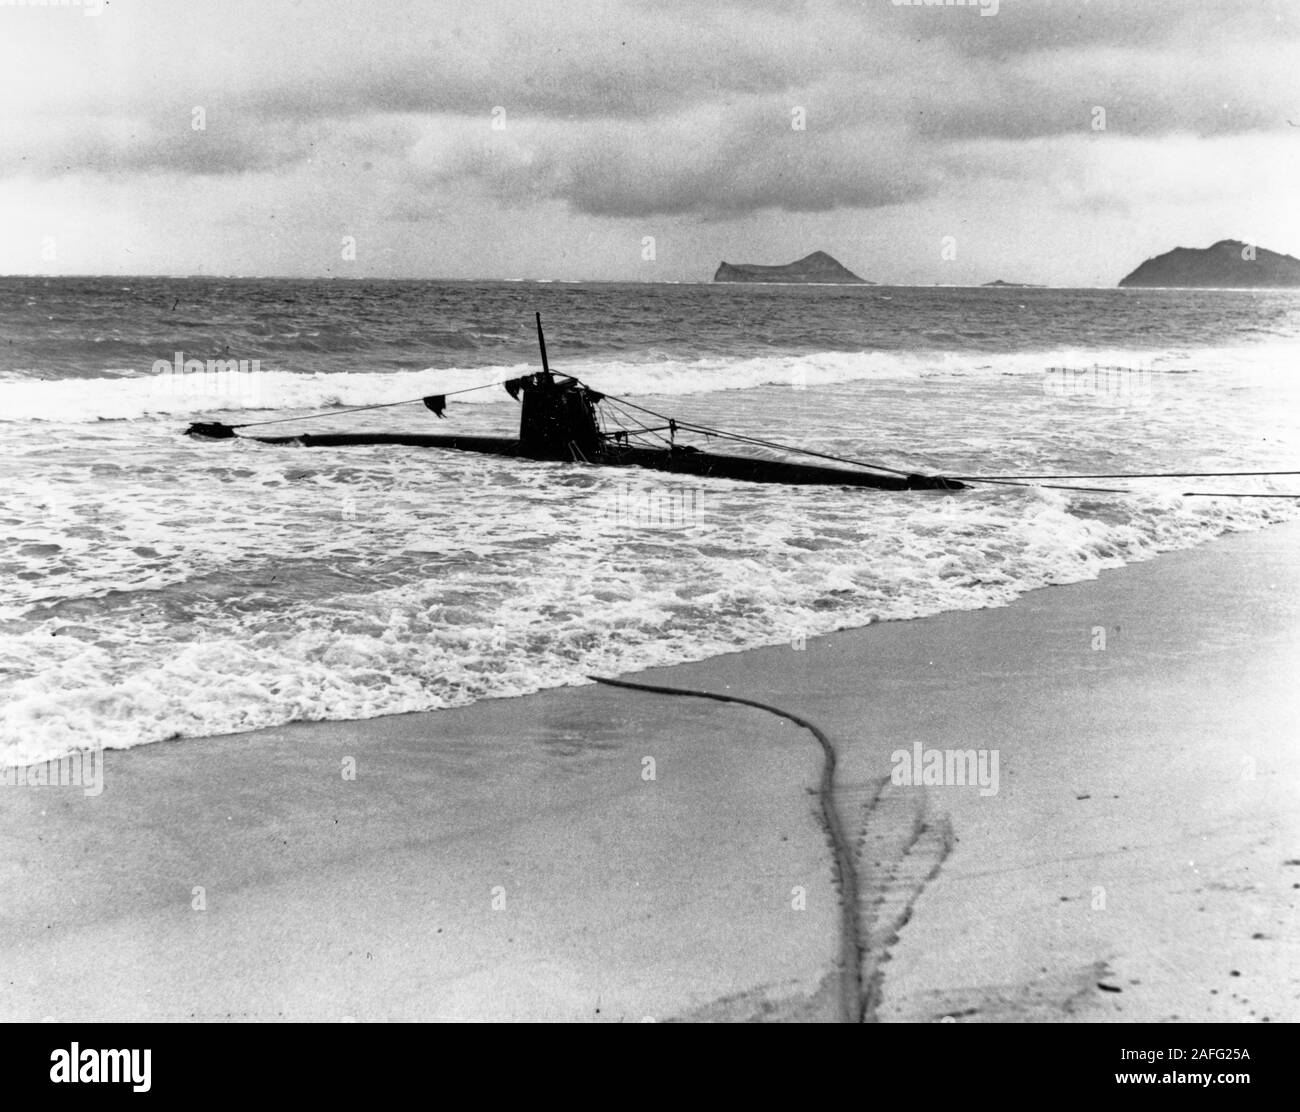 (Giapponese Tipo un midget sottomarino) Spiaggiata su Oahu, dopo che esso è andato arenarsi dopo i tentativi di inserimento di Pearl Harbor durante il 7 dicembre 1941 attacco giapponese. La fotografia è stata scattata o subito dopo il 8 dicembre 1941. Foto Stock